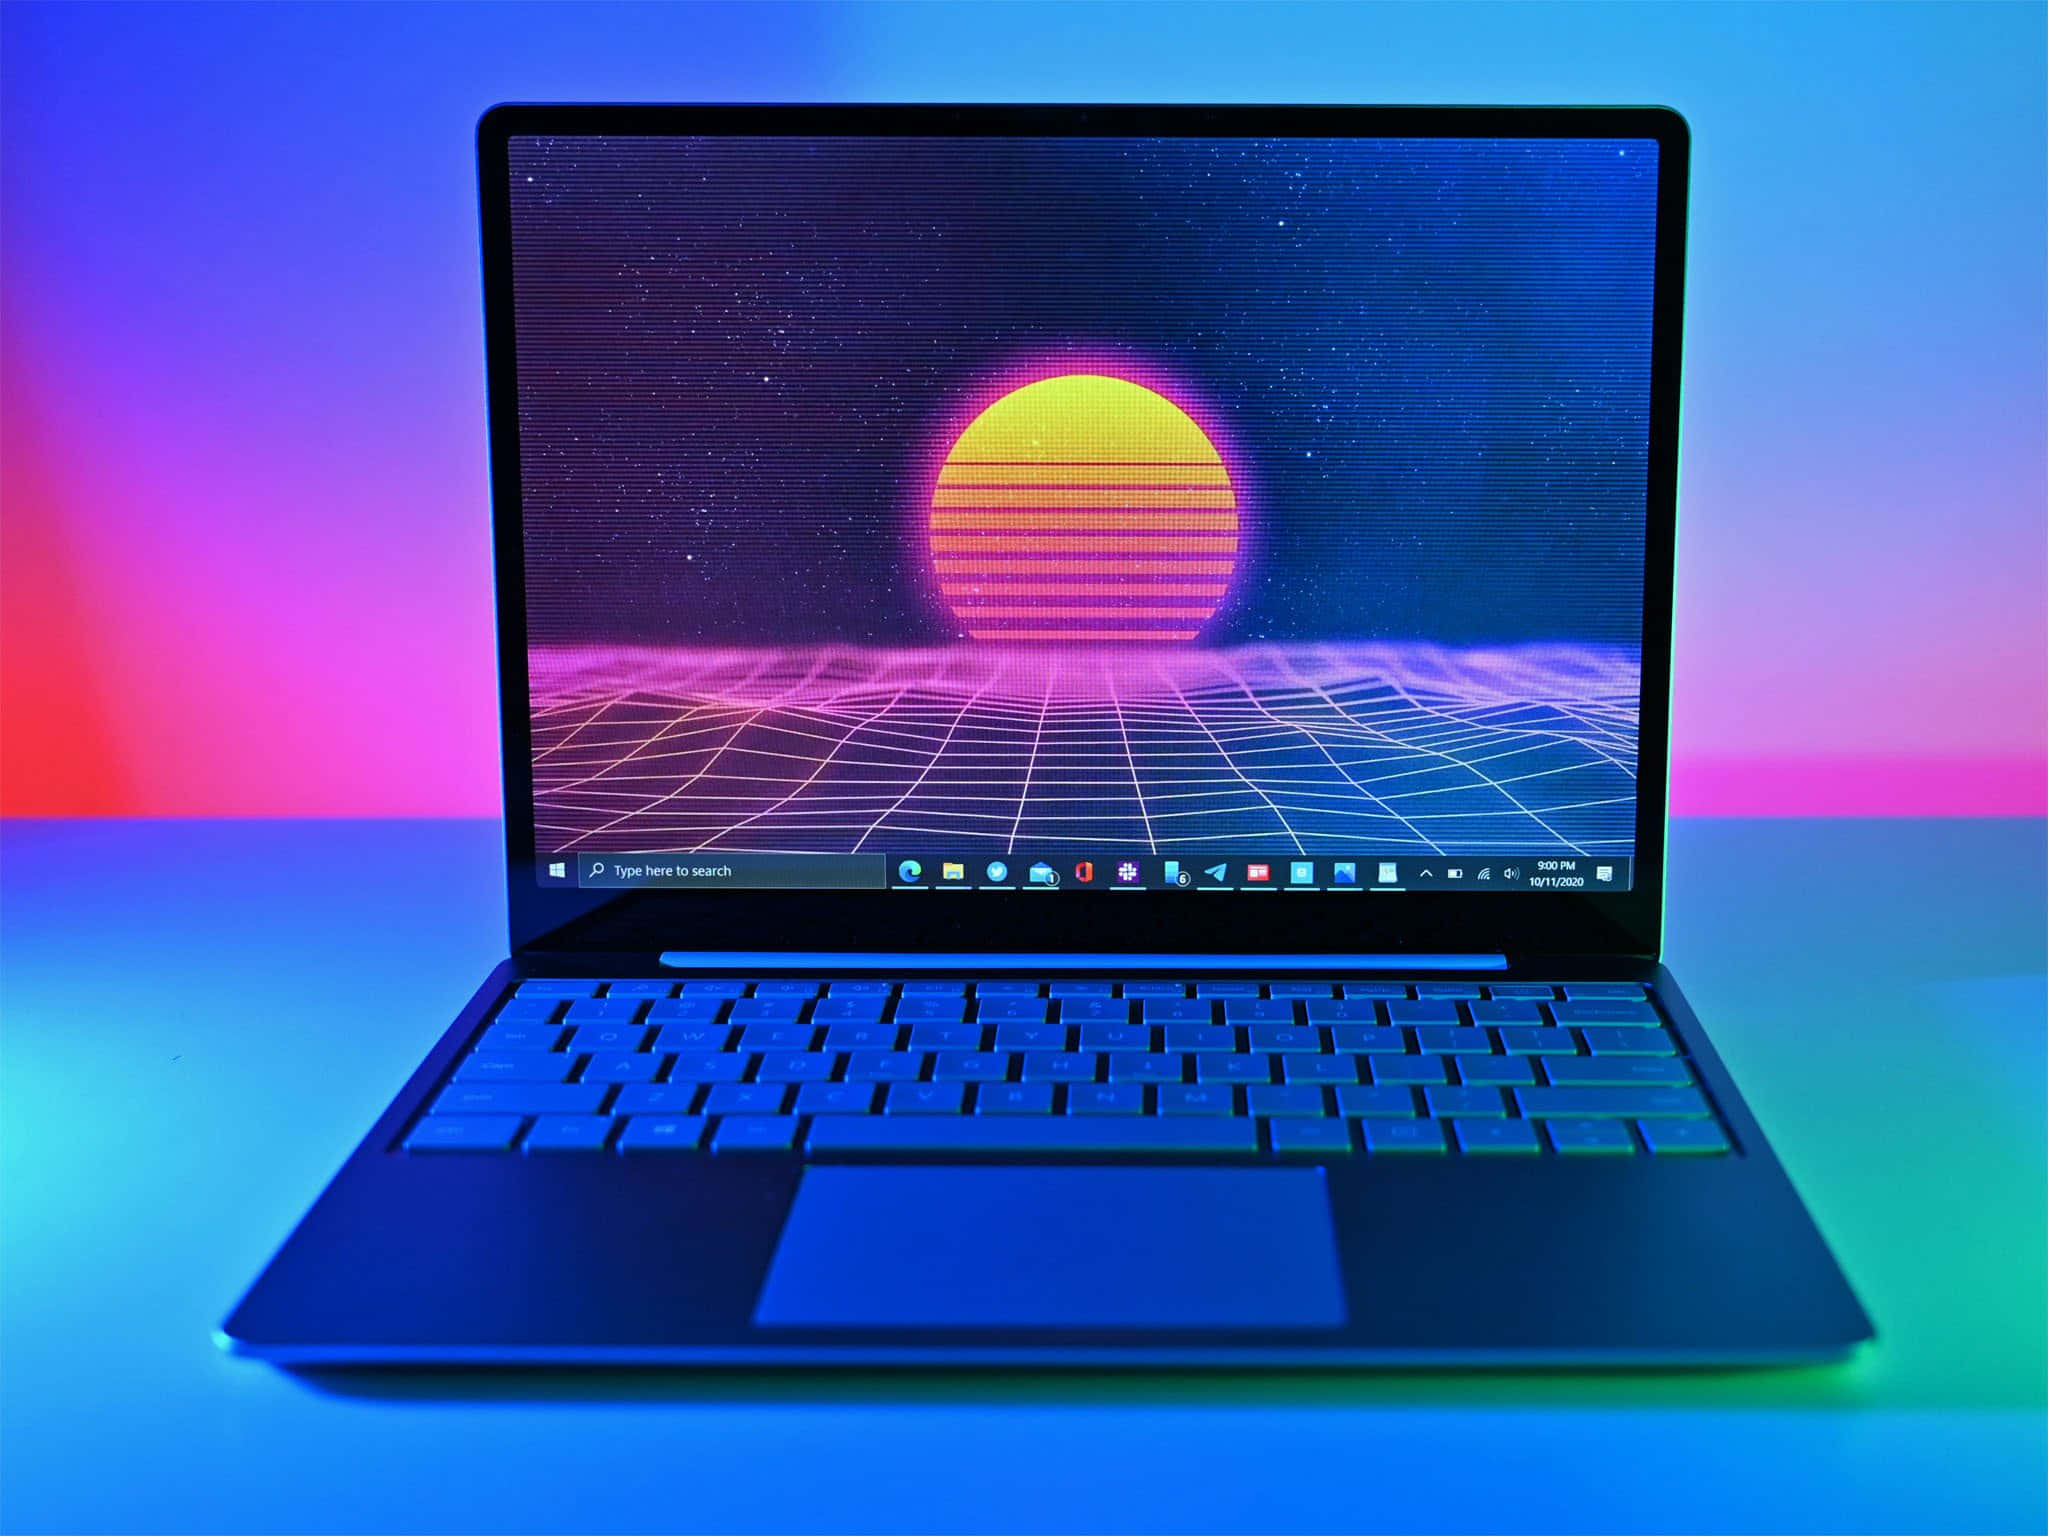 Laptopdi Alta Qualità Con Un Design Accattivante Per Migliorare La Tua Esperienza Informatica Ed Estetica.